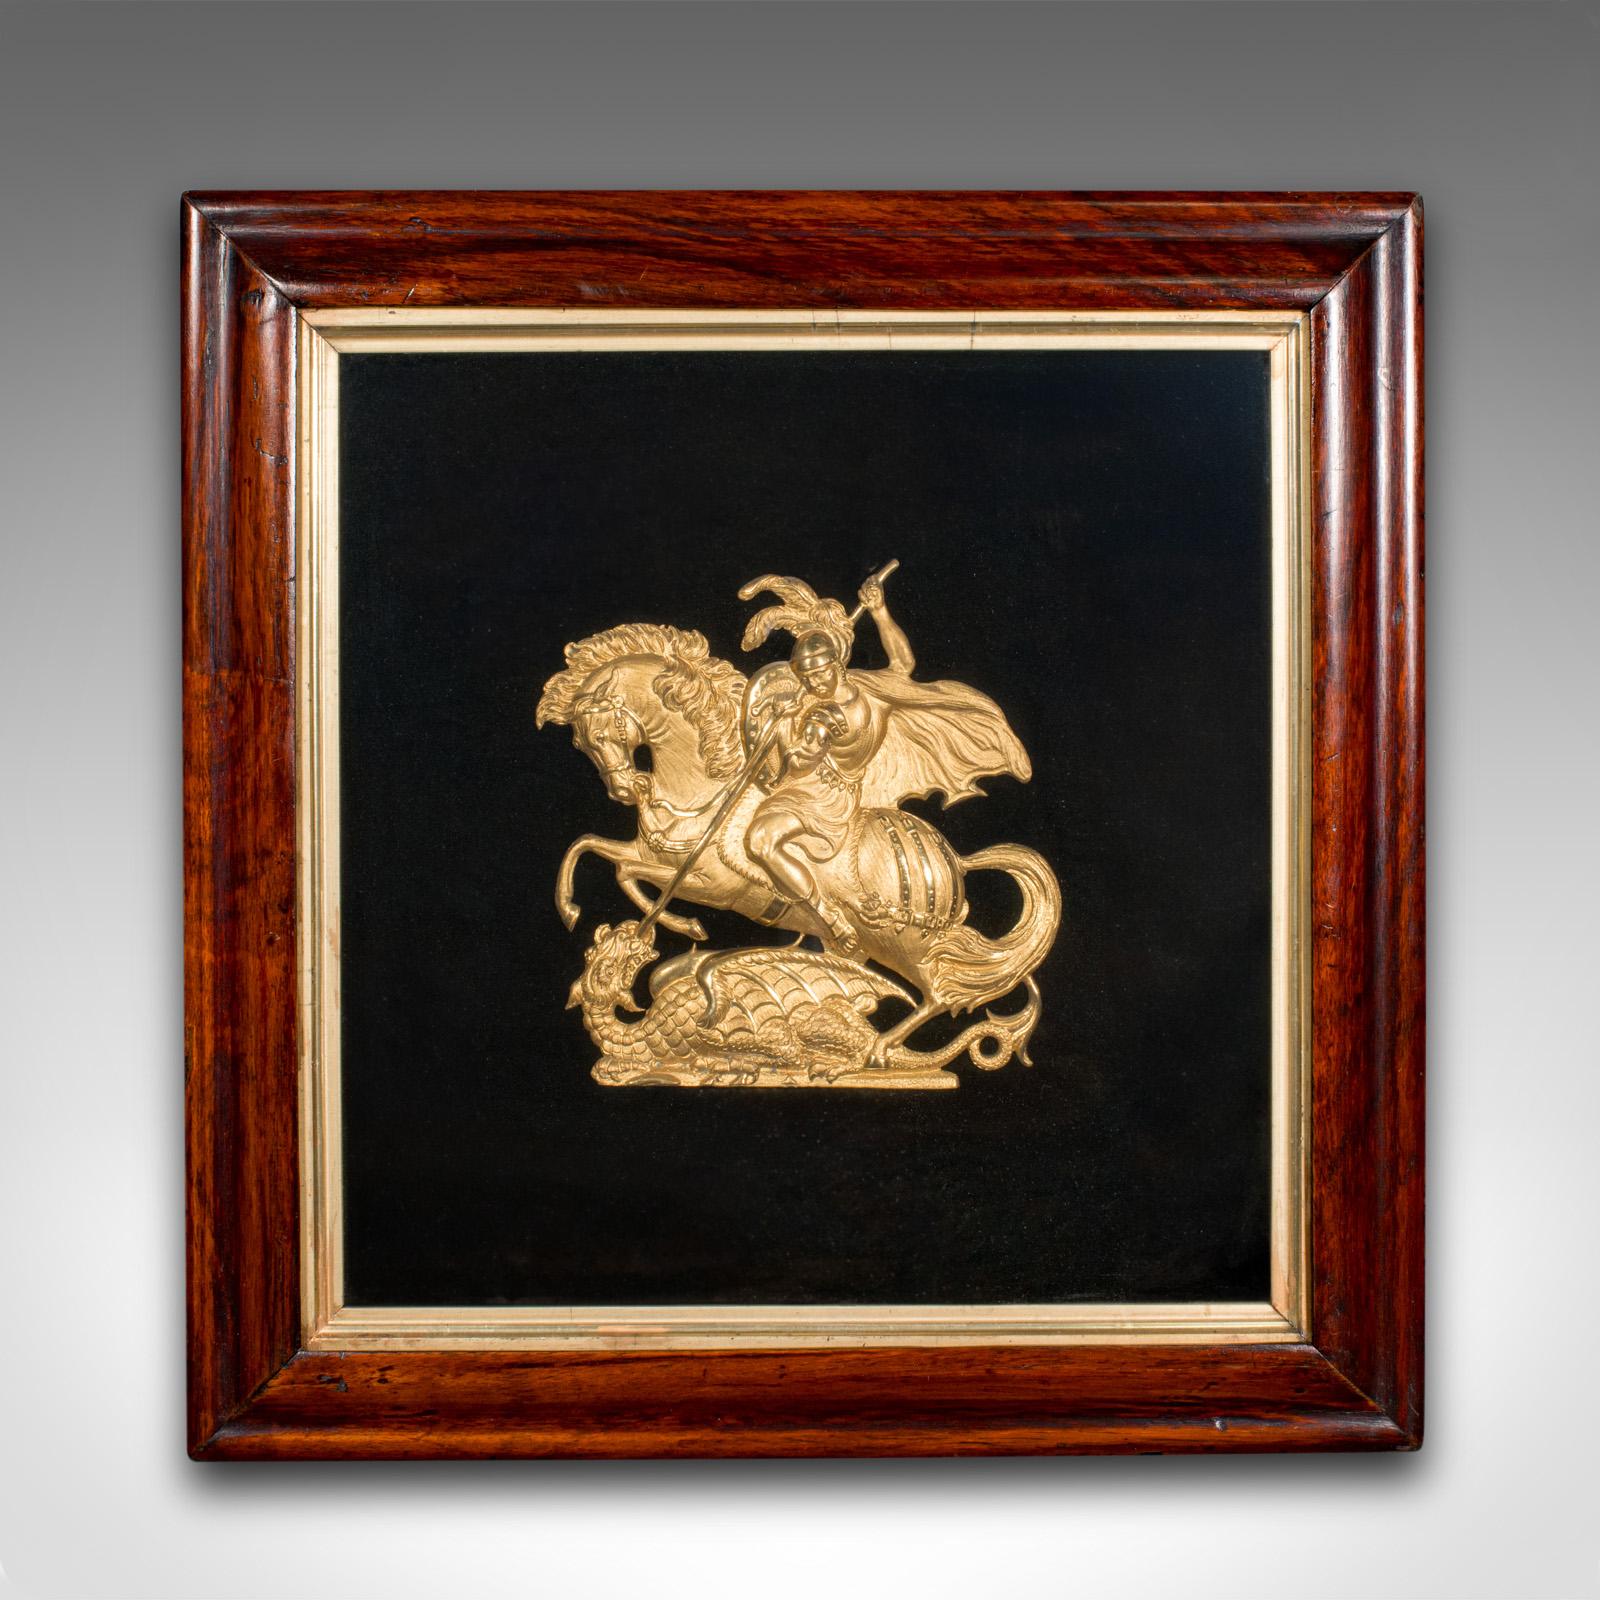 Il s'agit d'une ancienne plaque de présentation de George et le Dragon. Relief décoratif anglais, encadré de métal doré et de hêtre, datant de la période Regency et plus tard, vers 1820.

Saint Georges de Lydda, l'un des saints les plus vénérés au